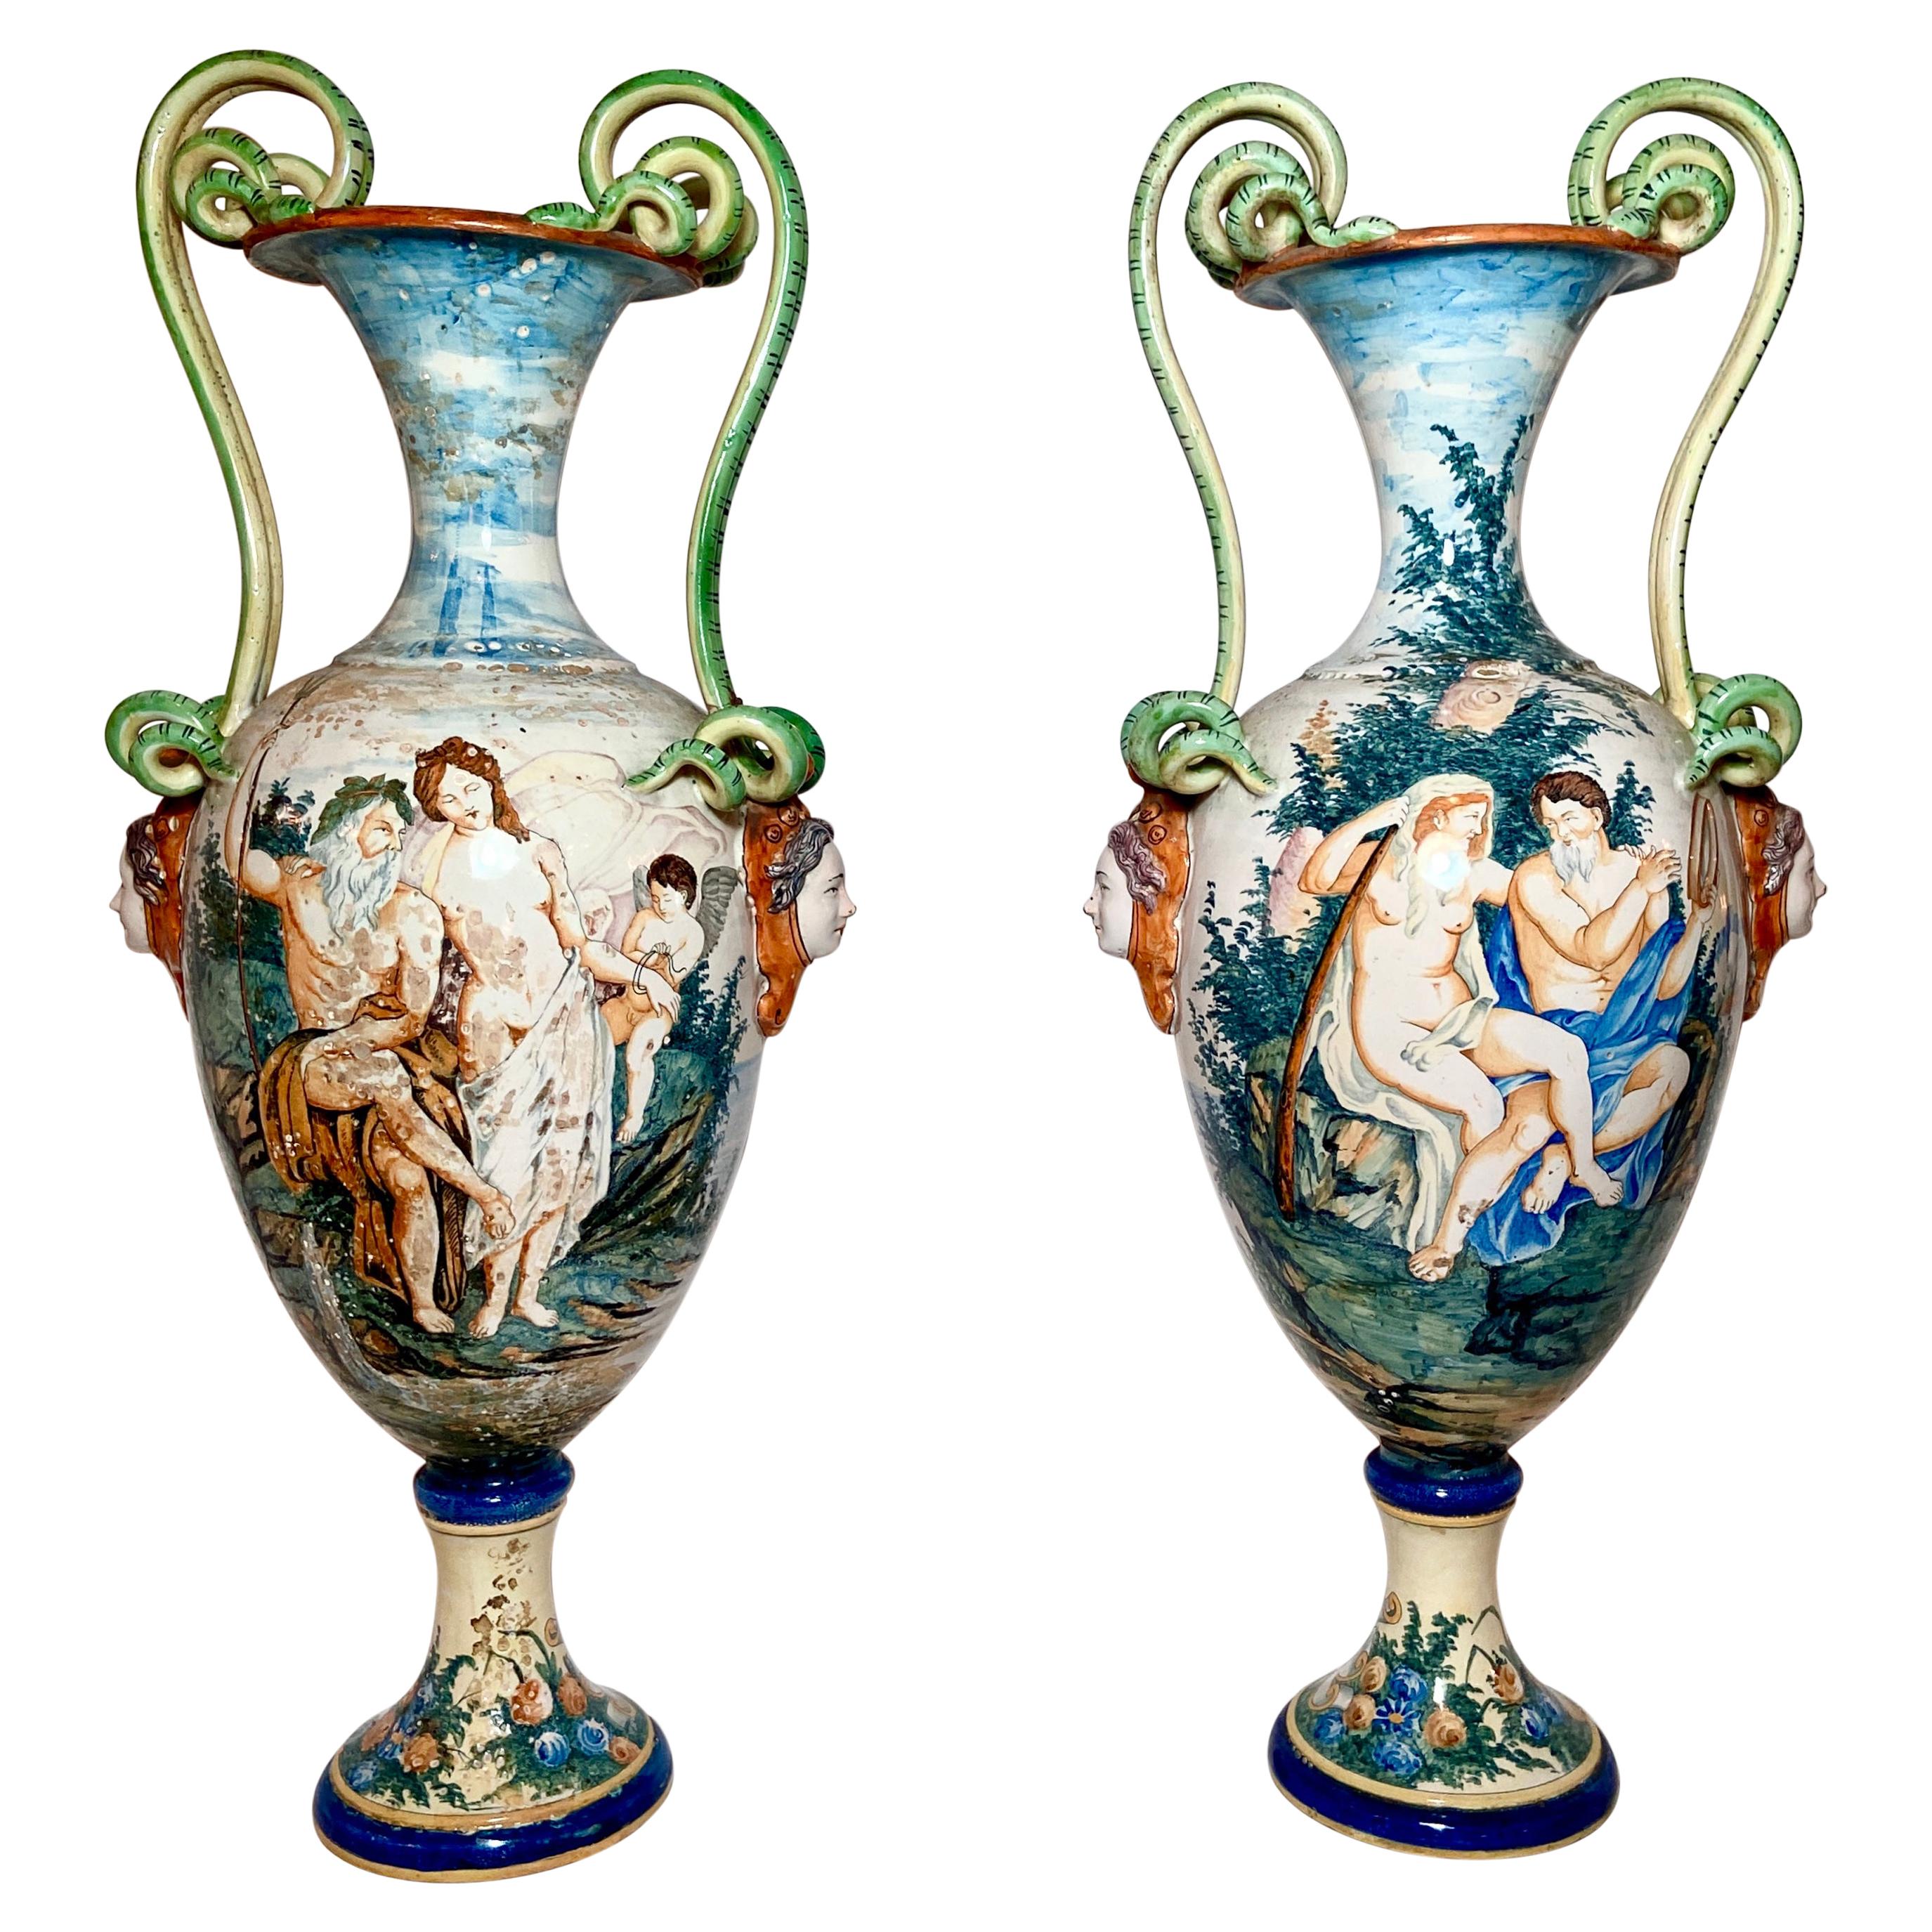 Paire d'urnes italiennes anciennes du 19ème siècle en porcelaine « majolique » représentant des scènes mythologiques